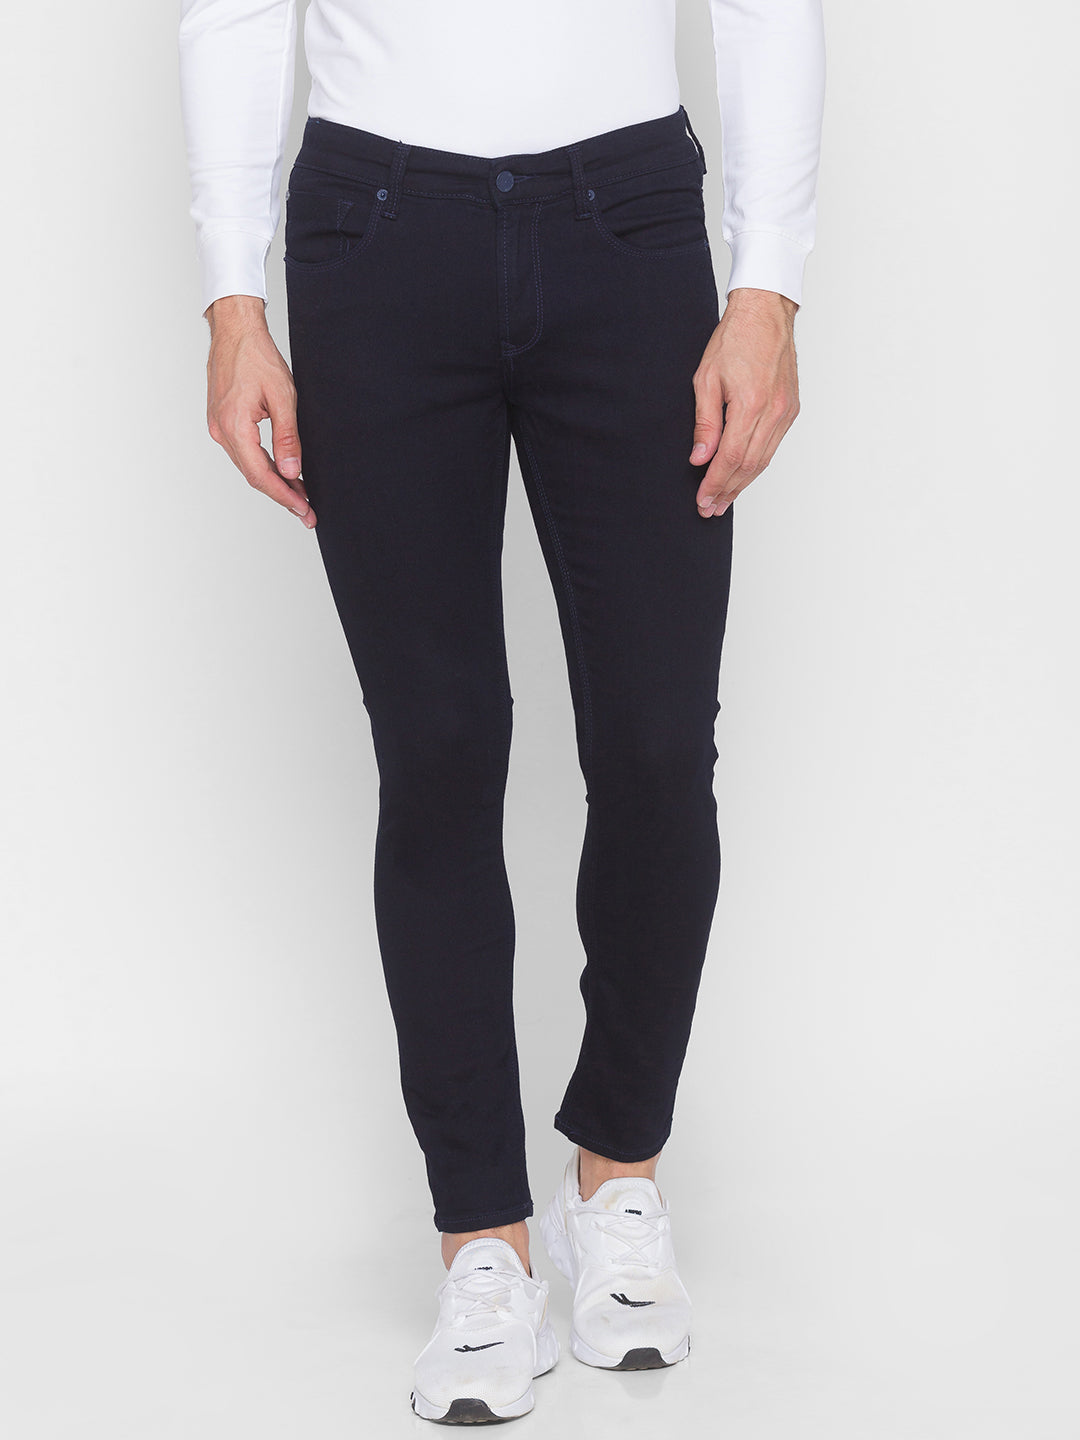 Spykar Men Blue Cotton Super Slim Fit Tapered length Jeans (Super Skinny)